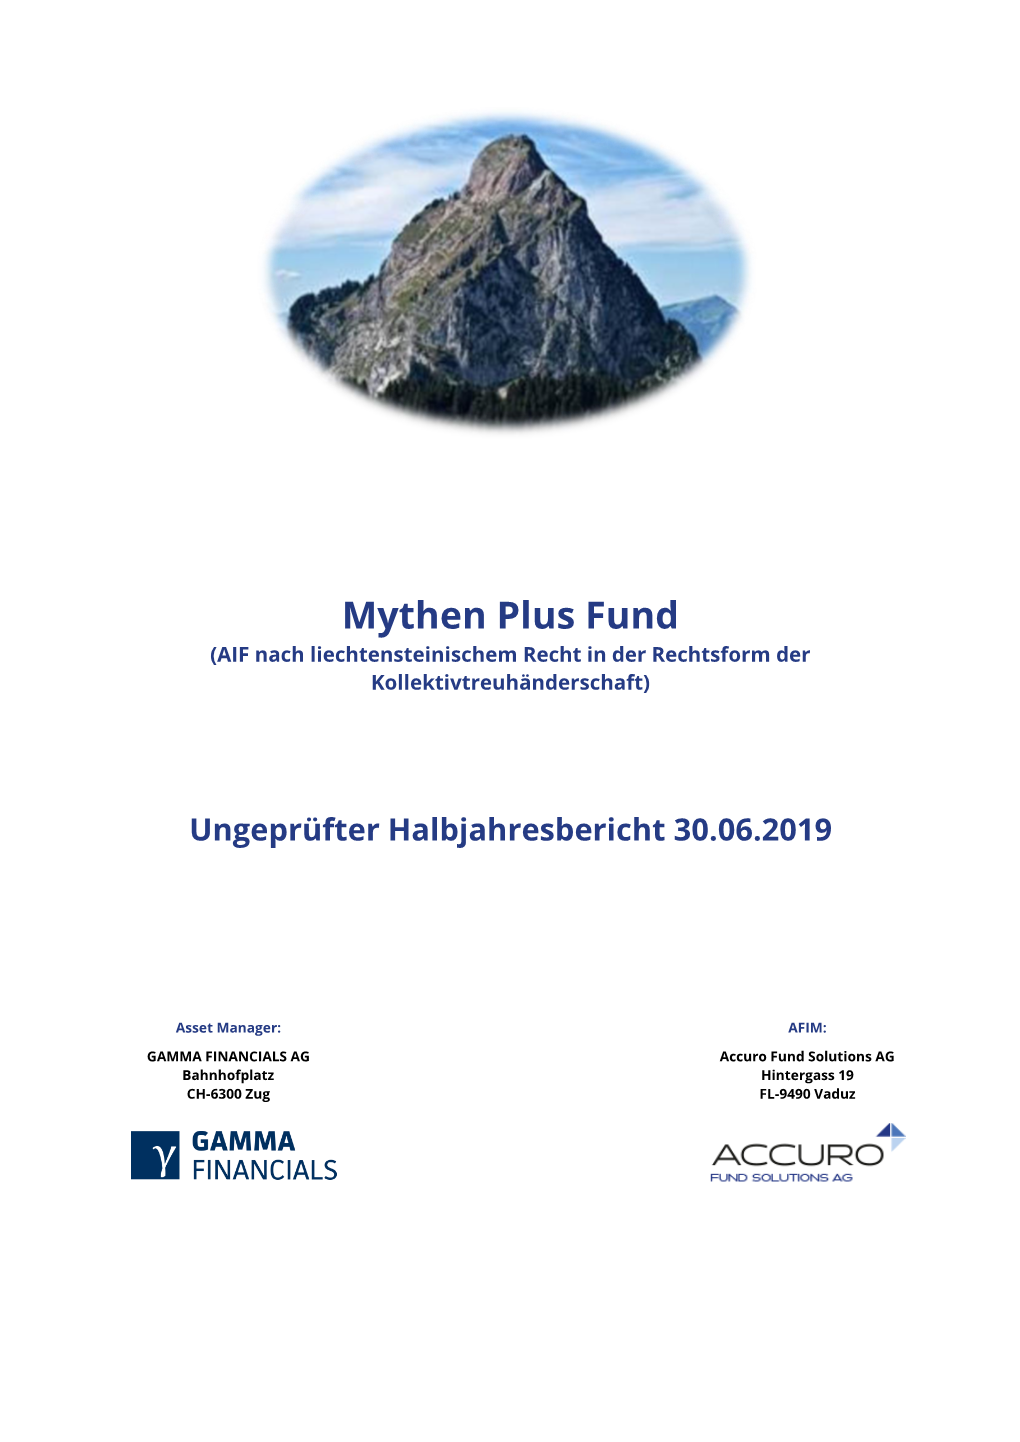 Mythen Plus Fund (AIF Nach Liechtensteinischem Recht in Der Rechtsform Der Kollektivtreuhänderschaft)